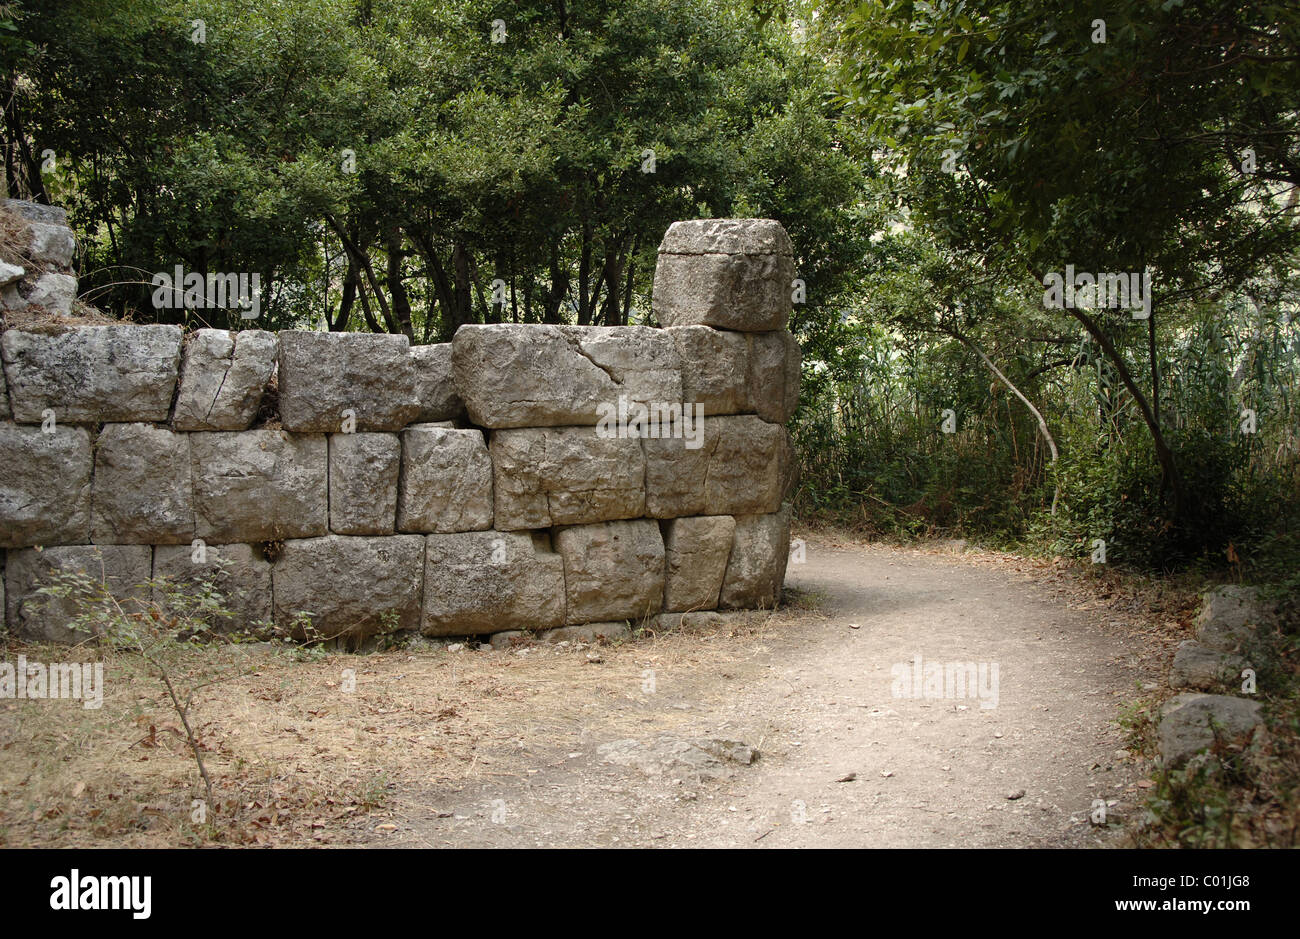 L'Albania. Butrinto. Mura ciclopiche della città antica, risalente al IV secolo A.C. Periodo ellenistico. Foto Stock